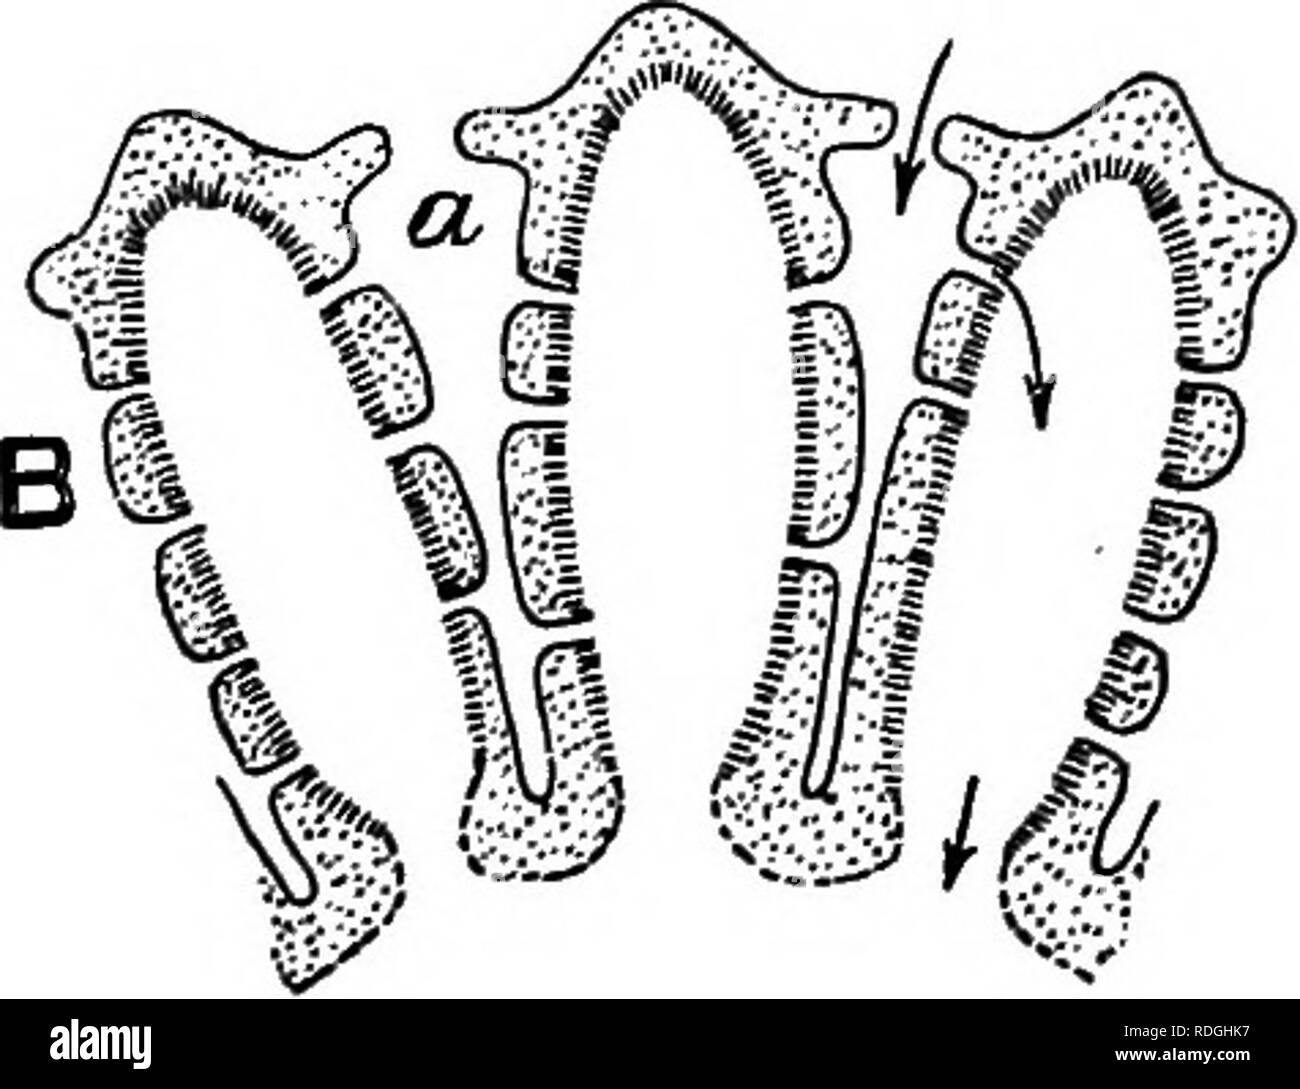 . Eine Einführung in die Zoologie, mit Anweisungen für die praktische Arbeit (Wirbellose). Abb. 28. ÂVarious Formen der Schwamm Spicules (von Parlcer und Haswell). spicules, die so sehr charakteristisch sind der Schwämme und ihnen ihre harte Textur geben. Diese spicules sind von sehr unterschiedlichen Formen in verschiedenen Schwämmen (Abb. 28); in der Ascon Typ Sie sind in der Regel drei durchleuchtet und Kalk. Diese sehr einfache Ascon Art der Struktur wird in kein Erwachsener Britischen schwamm gefunden, aber eine Bühne durch einige von Ihnen weitergegeben, z.b. Clathrina Blanca, die weißen Gitter Schwamm, die in diesem Stadium hat eine Minute Vase-li Stockfoto